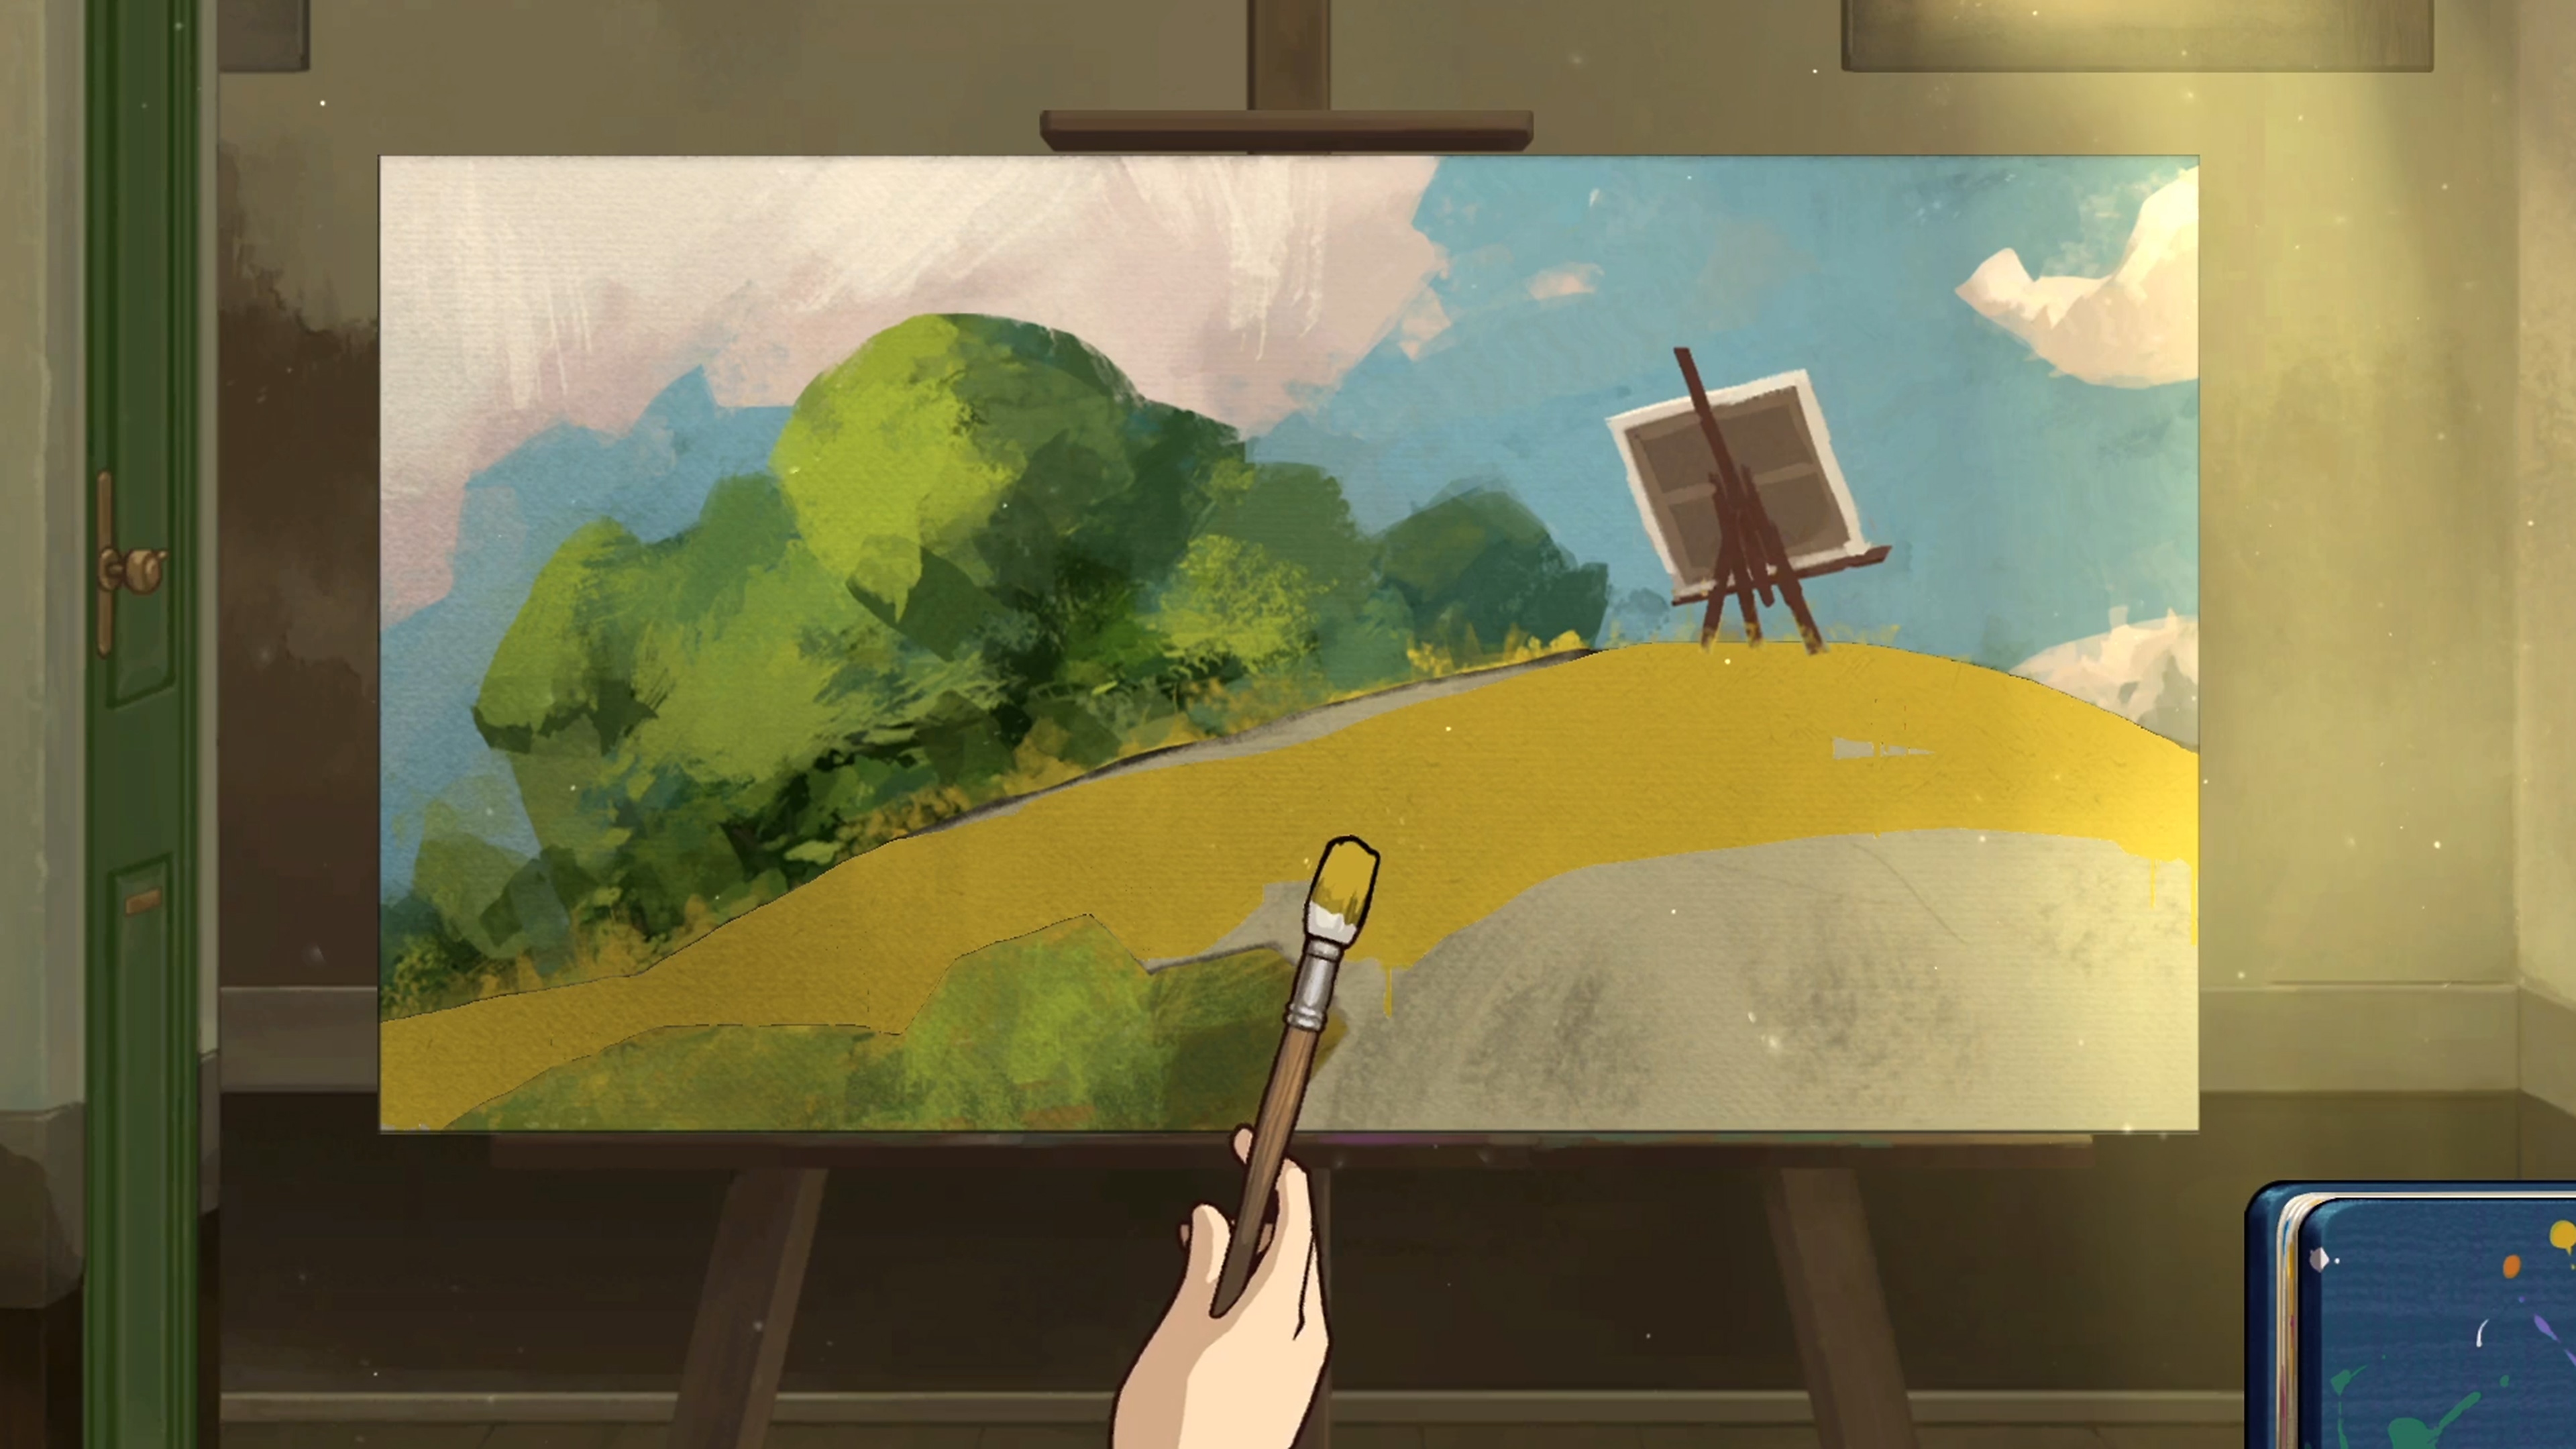 Behind the Frame: Il paesaggio più bello - Istantanea della schermata che mostra il dipinto di un paesaggio